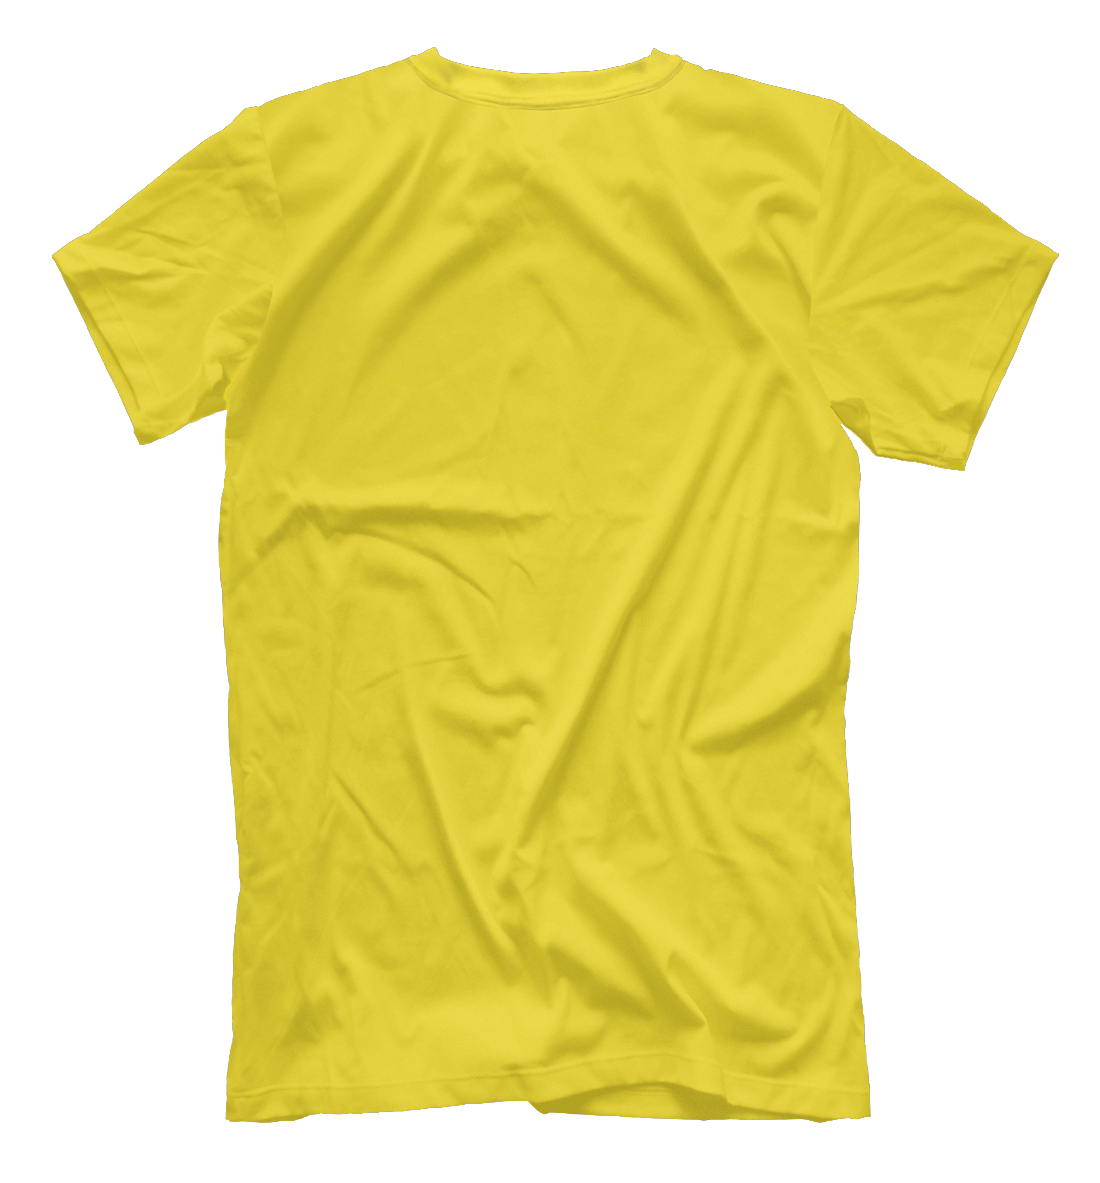 Детская Футболка Цвет Рапсово-желтый для мальчиков, артикул CLR-692519-fut-2mp - фото 2